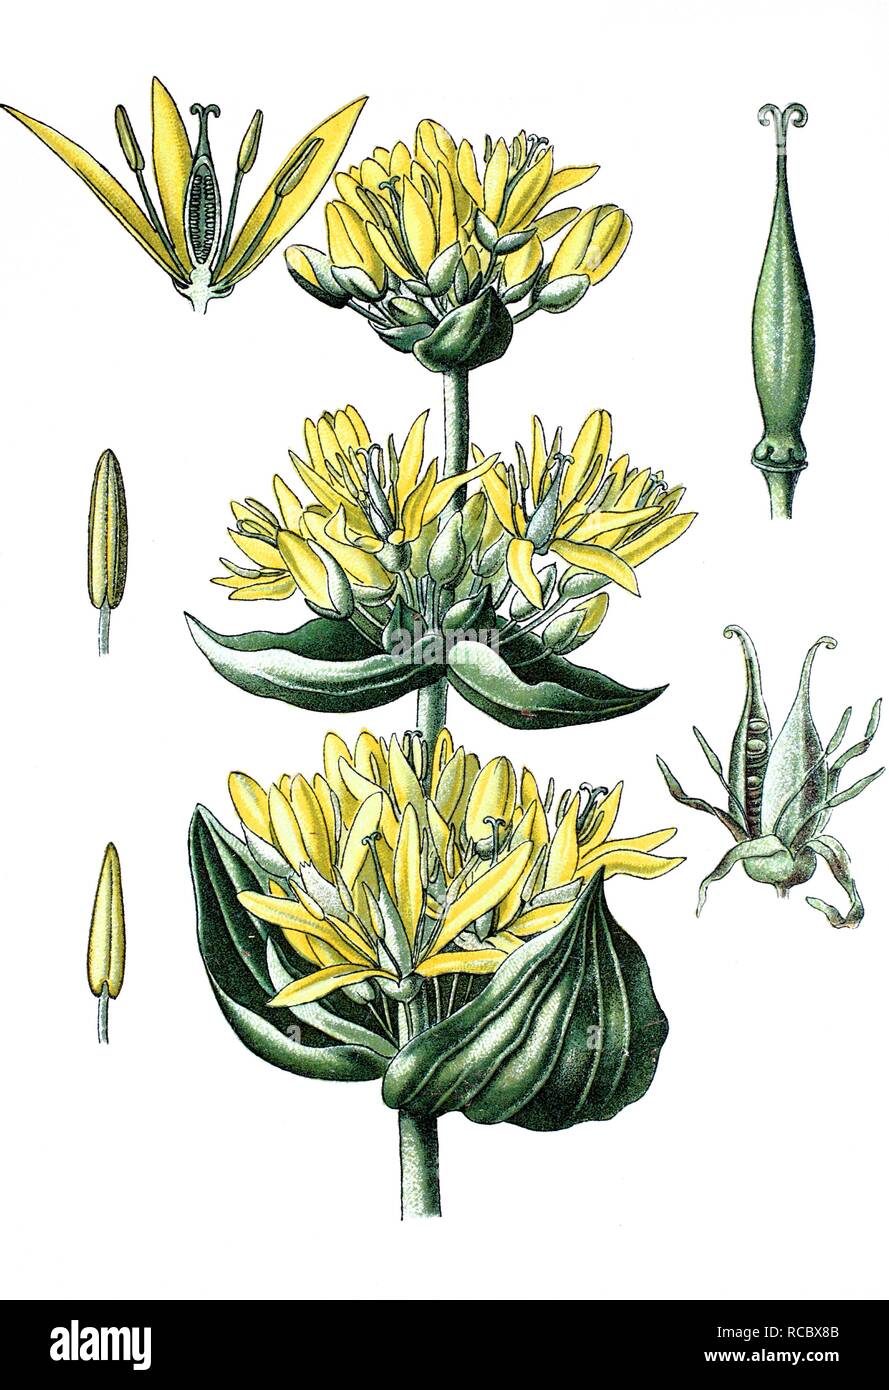 Grande Gentiane jaune (Gentiana lutea), plante médicinale, chromolithographie, 1870 historique Banque D'Images